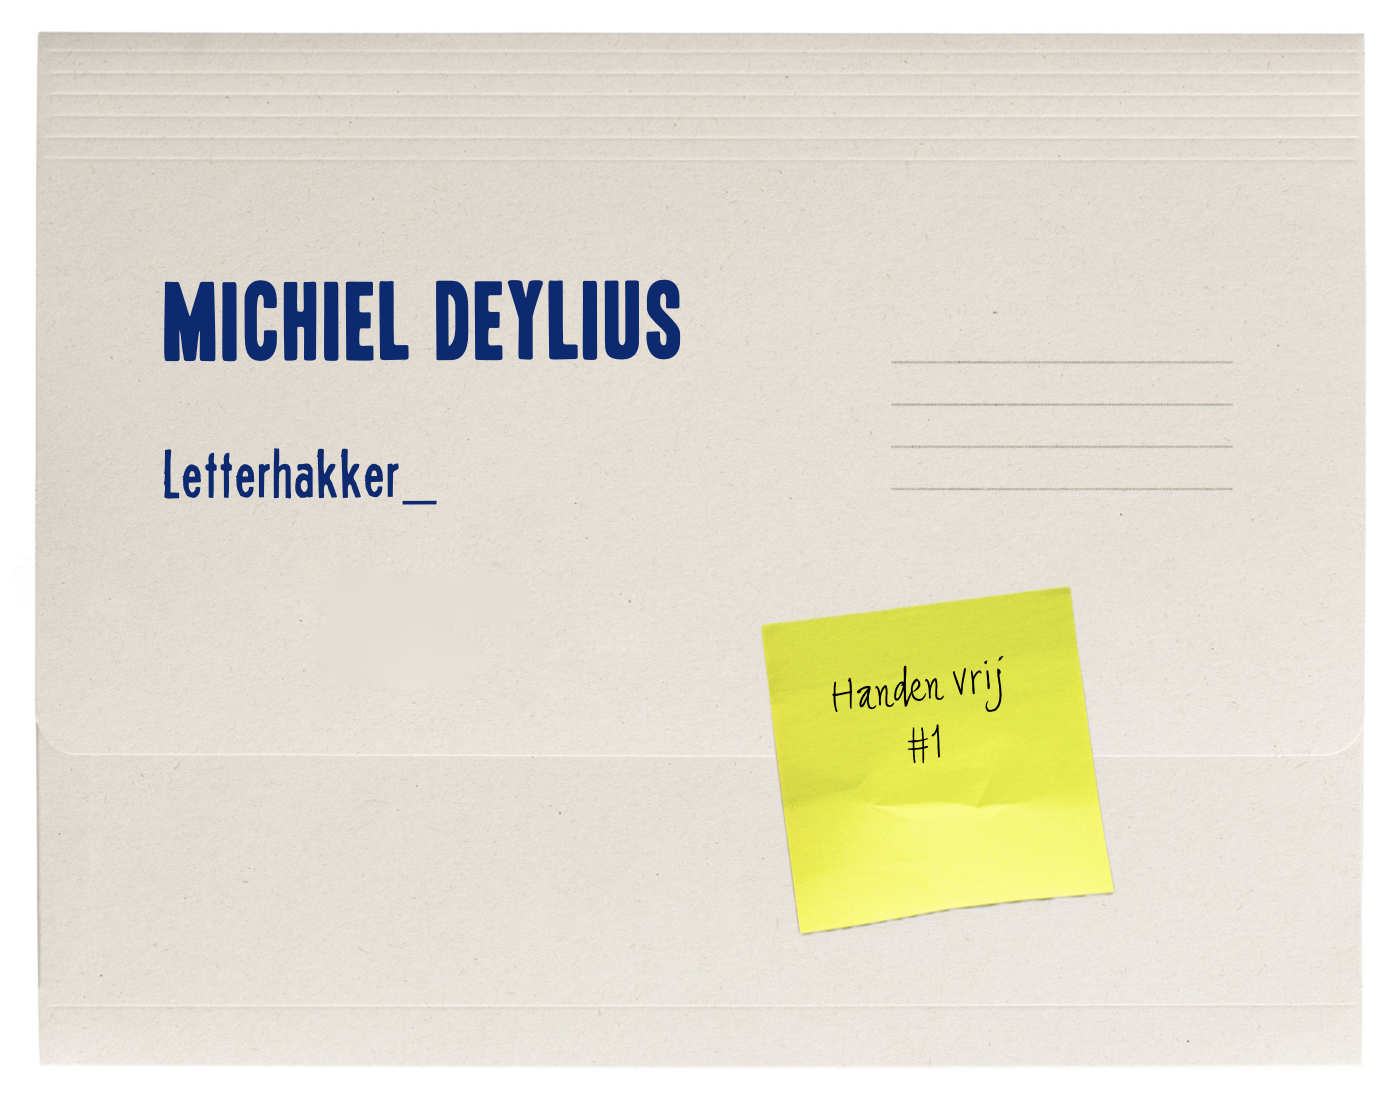 Handen vrij – Michiel Deylius, letterhakker